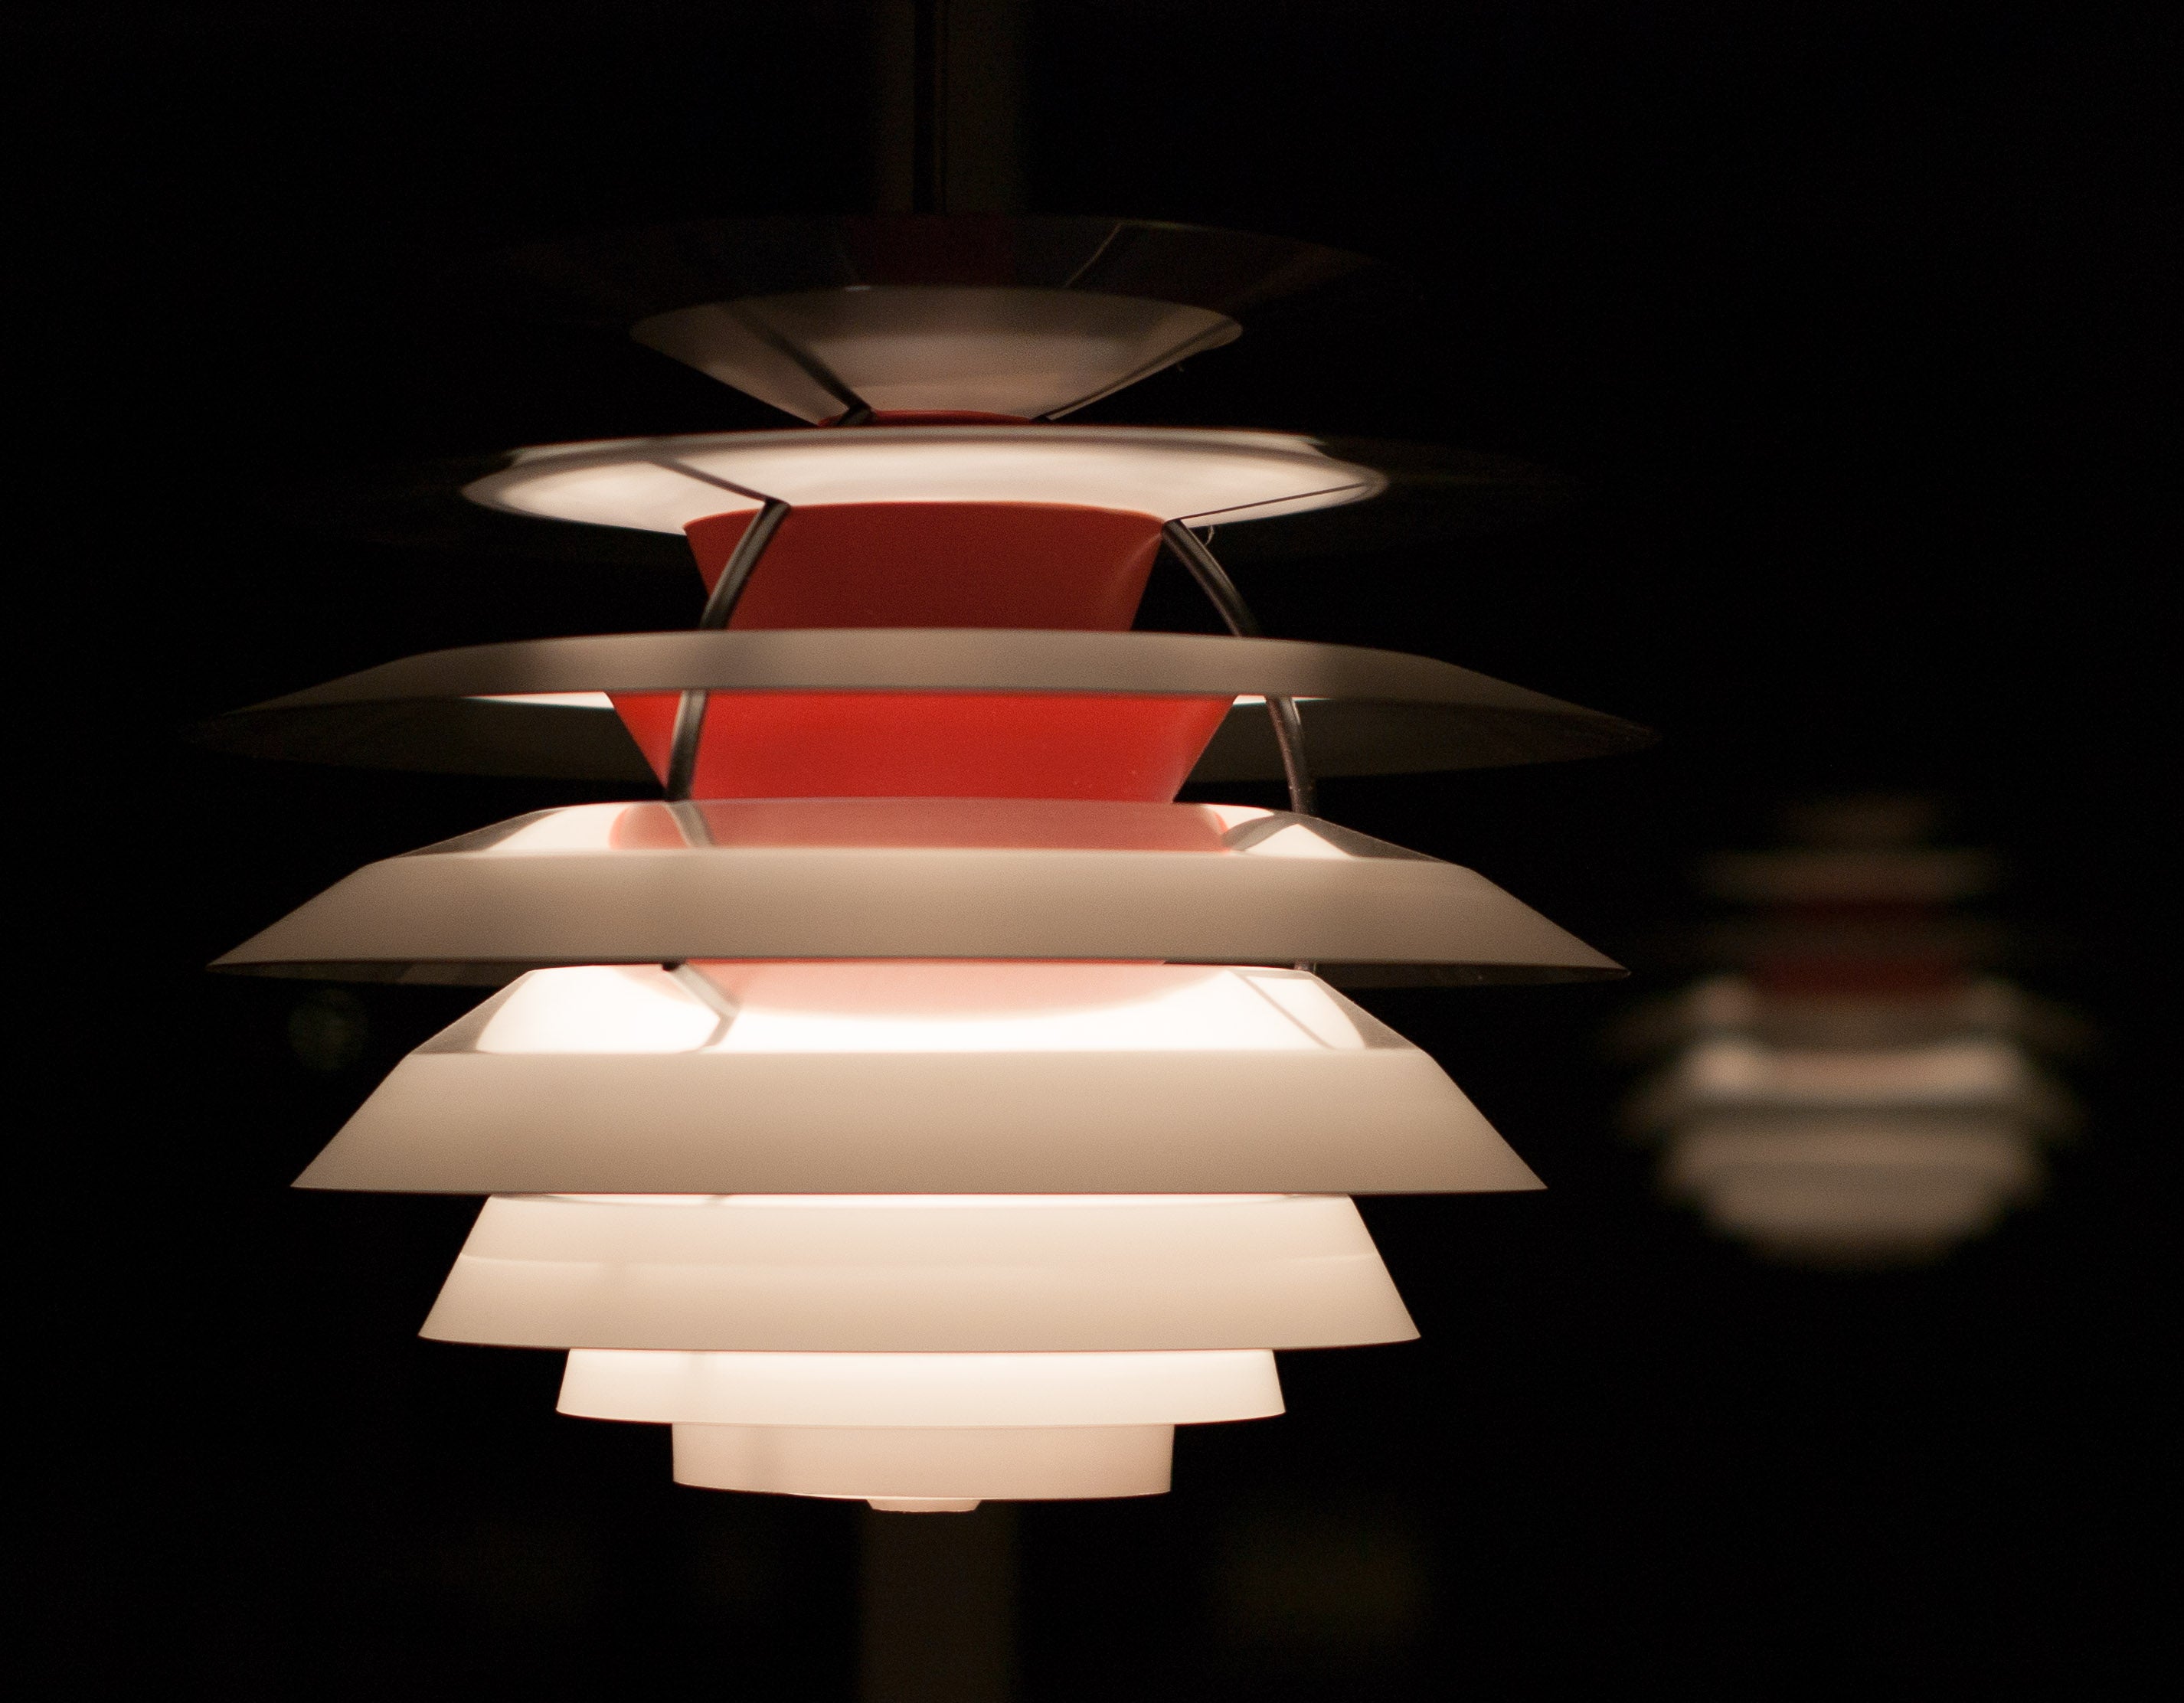 PH Kontrast lamp, designed by Poul Henningsen for Louis Poulsen.